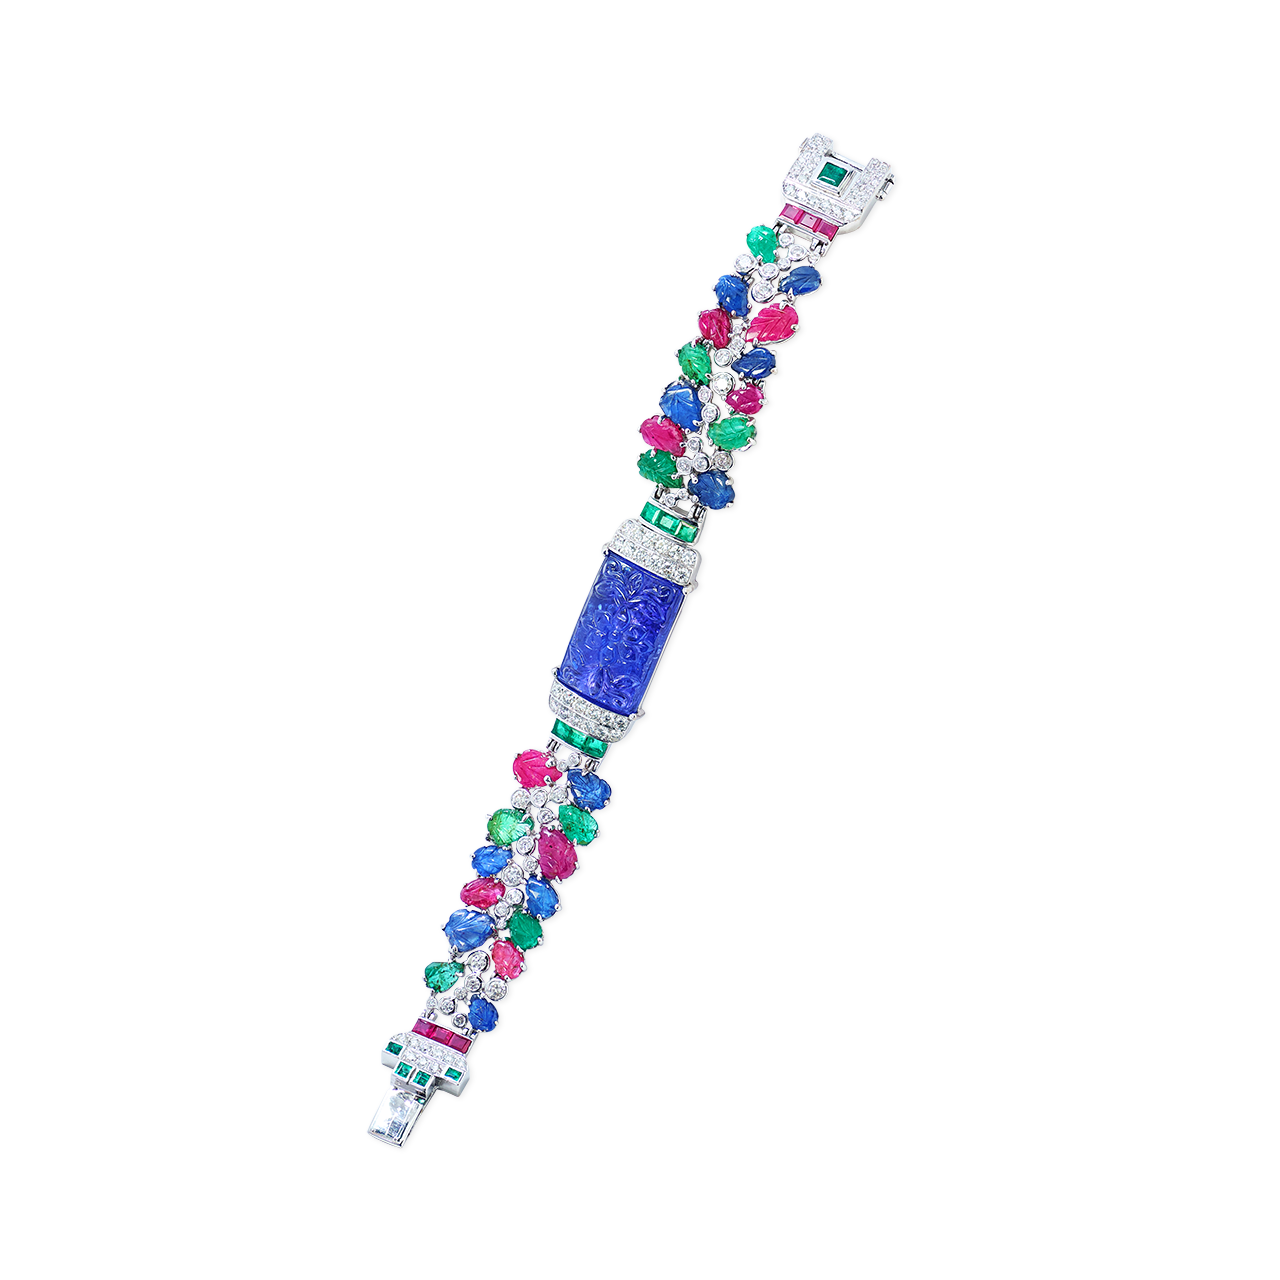 20.44克拉 丹泉石鑽石手鍊
Tanzanite, Multi- Colored 
Gemstone and Diamond Bracelet